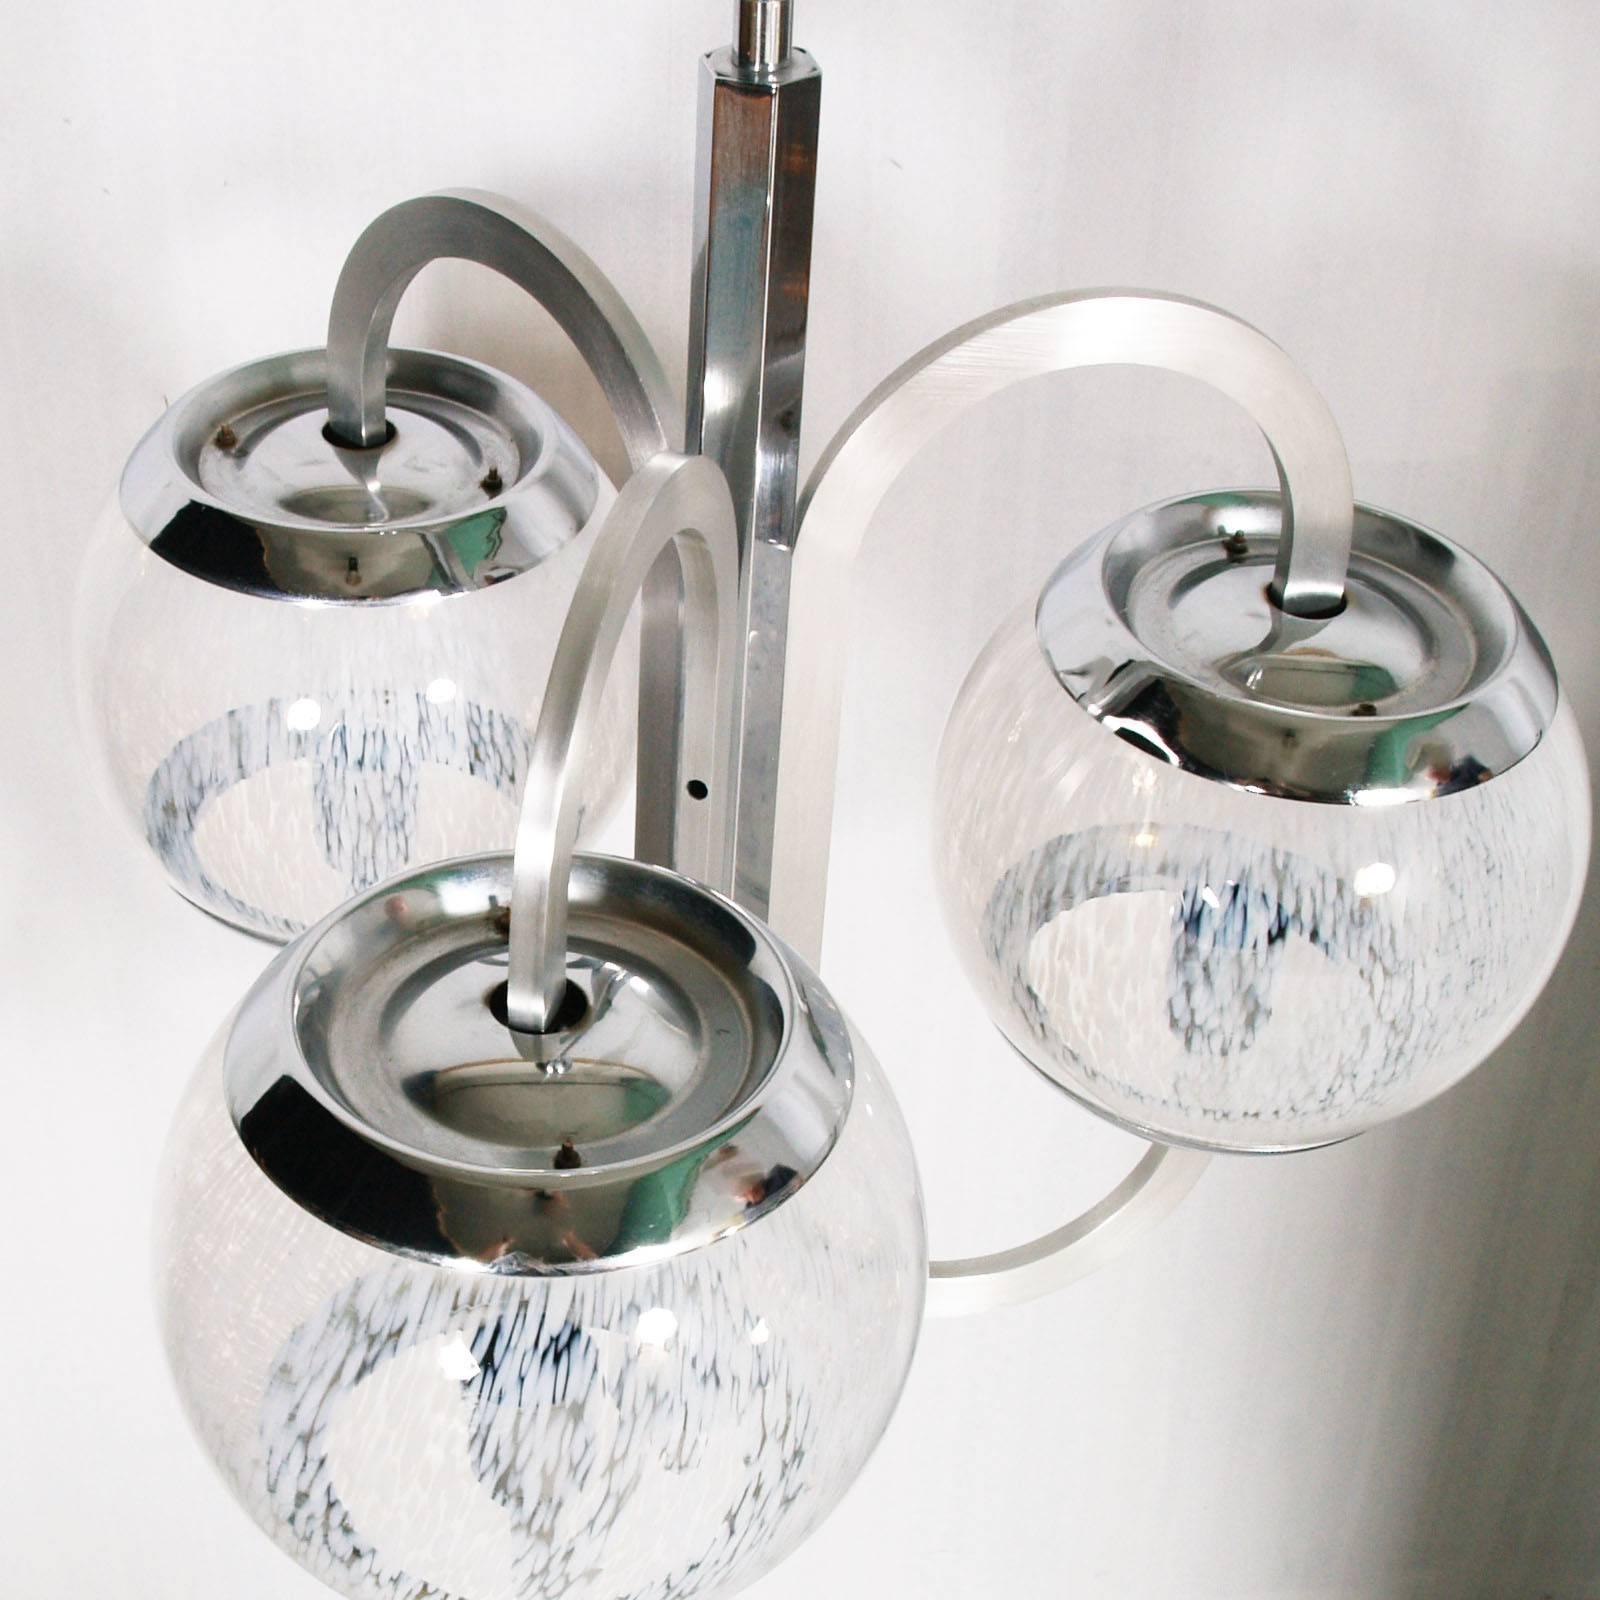 Lustre moderniste des années 1960 en acier chromé et aluminium avec trois grands verres de Murano Pulegoso 'BUBBLE', Carlo Steele attribuable.
Dimensions en cm : Hauteur 100, diamètre 55 (diamètre de la boule 20).
 